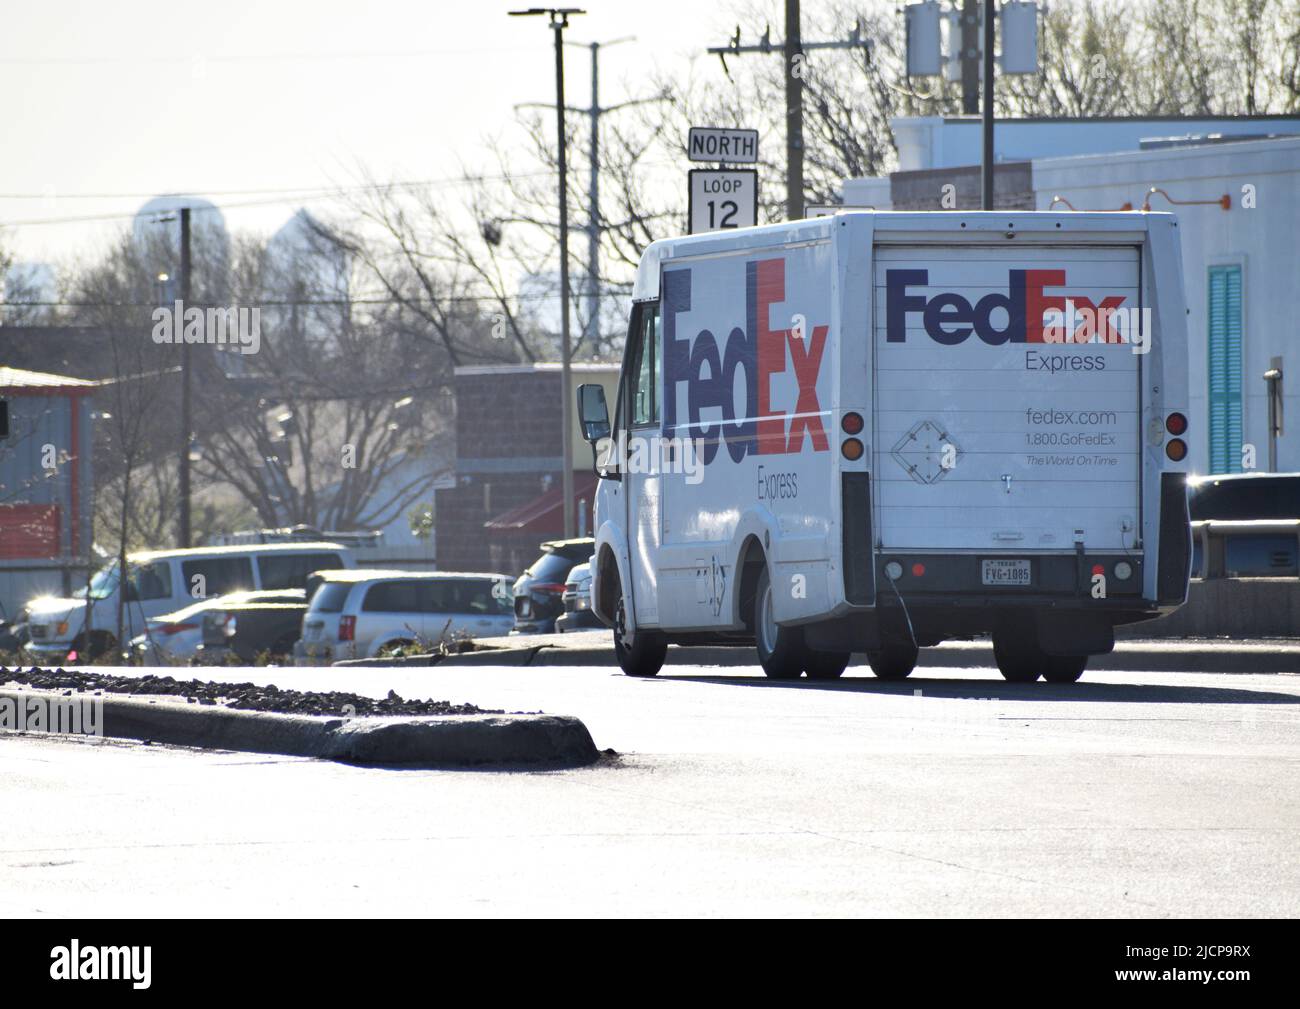 Veicolo di consegna FedEx durante la guida, vista che si allontana dalla telecamera, rivolta verso sinistra Foto Stock